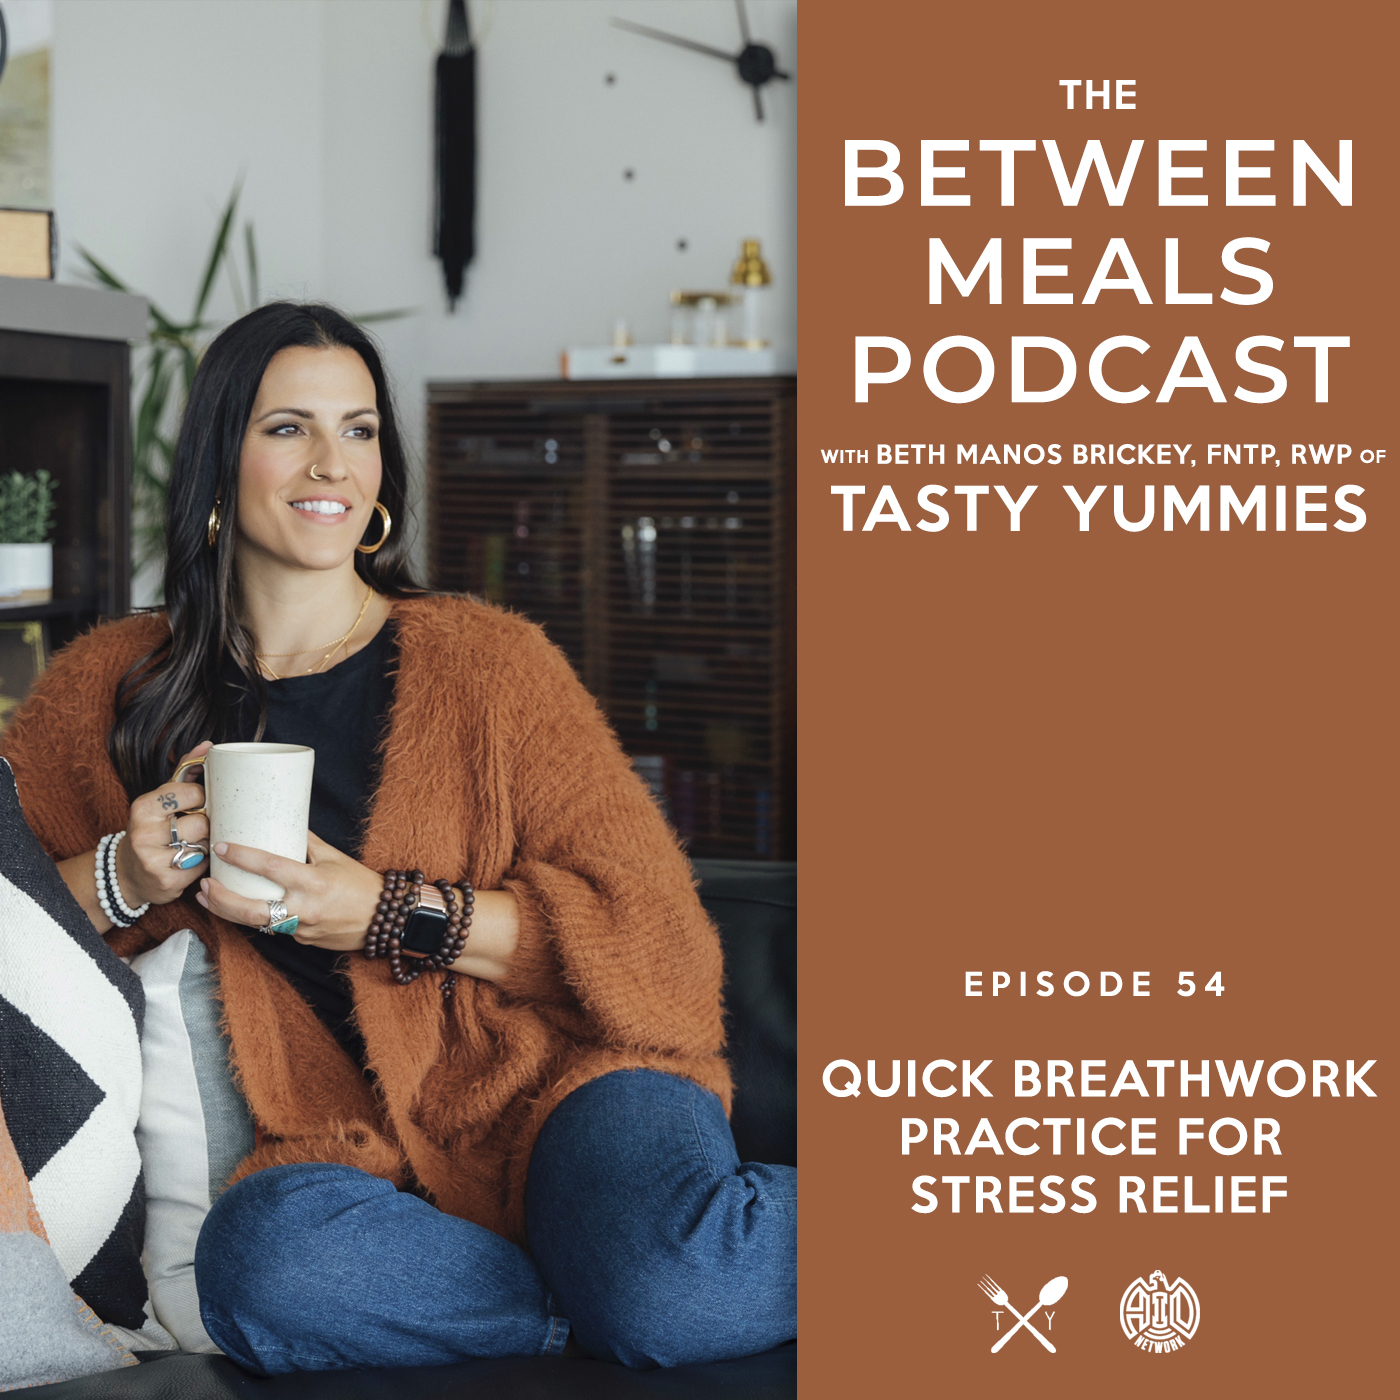 Between Meals Podcast. Episode 54: Quick Breathwork Practice for Stress Relief